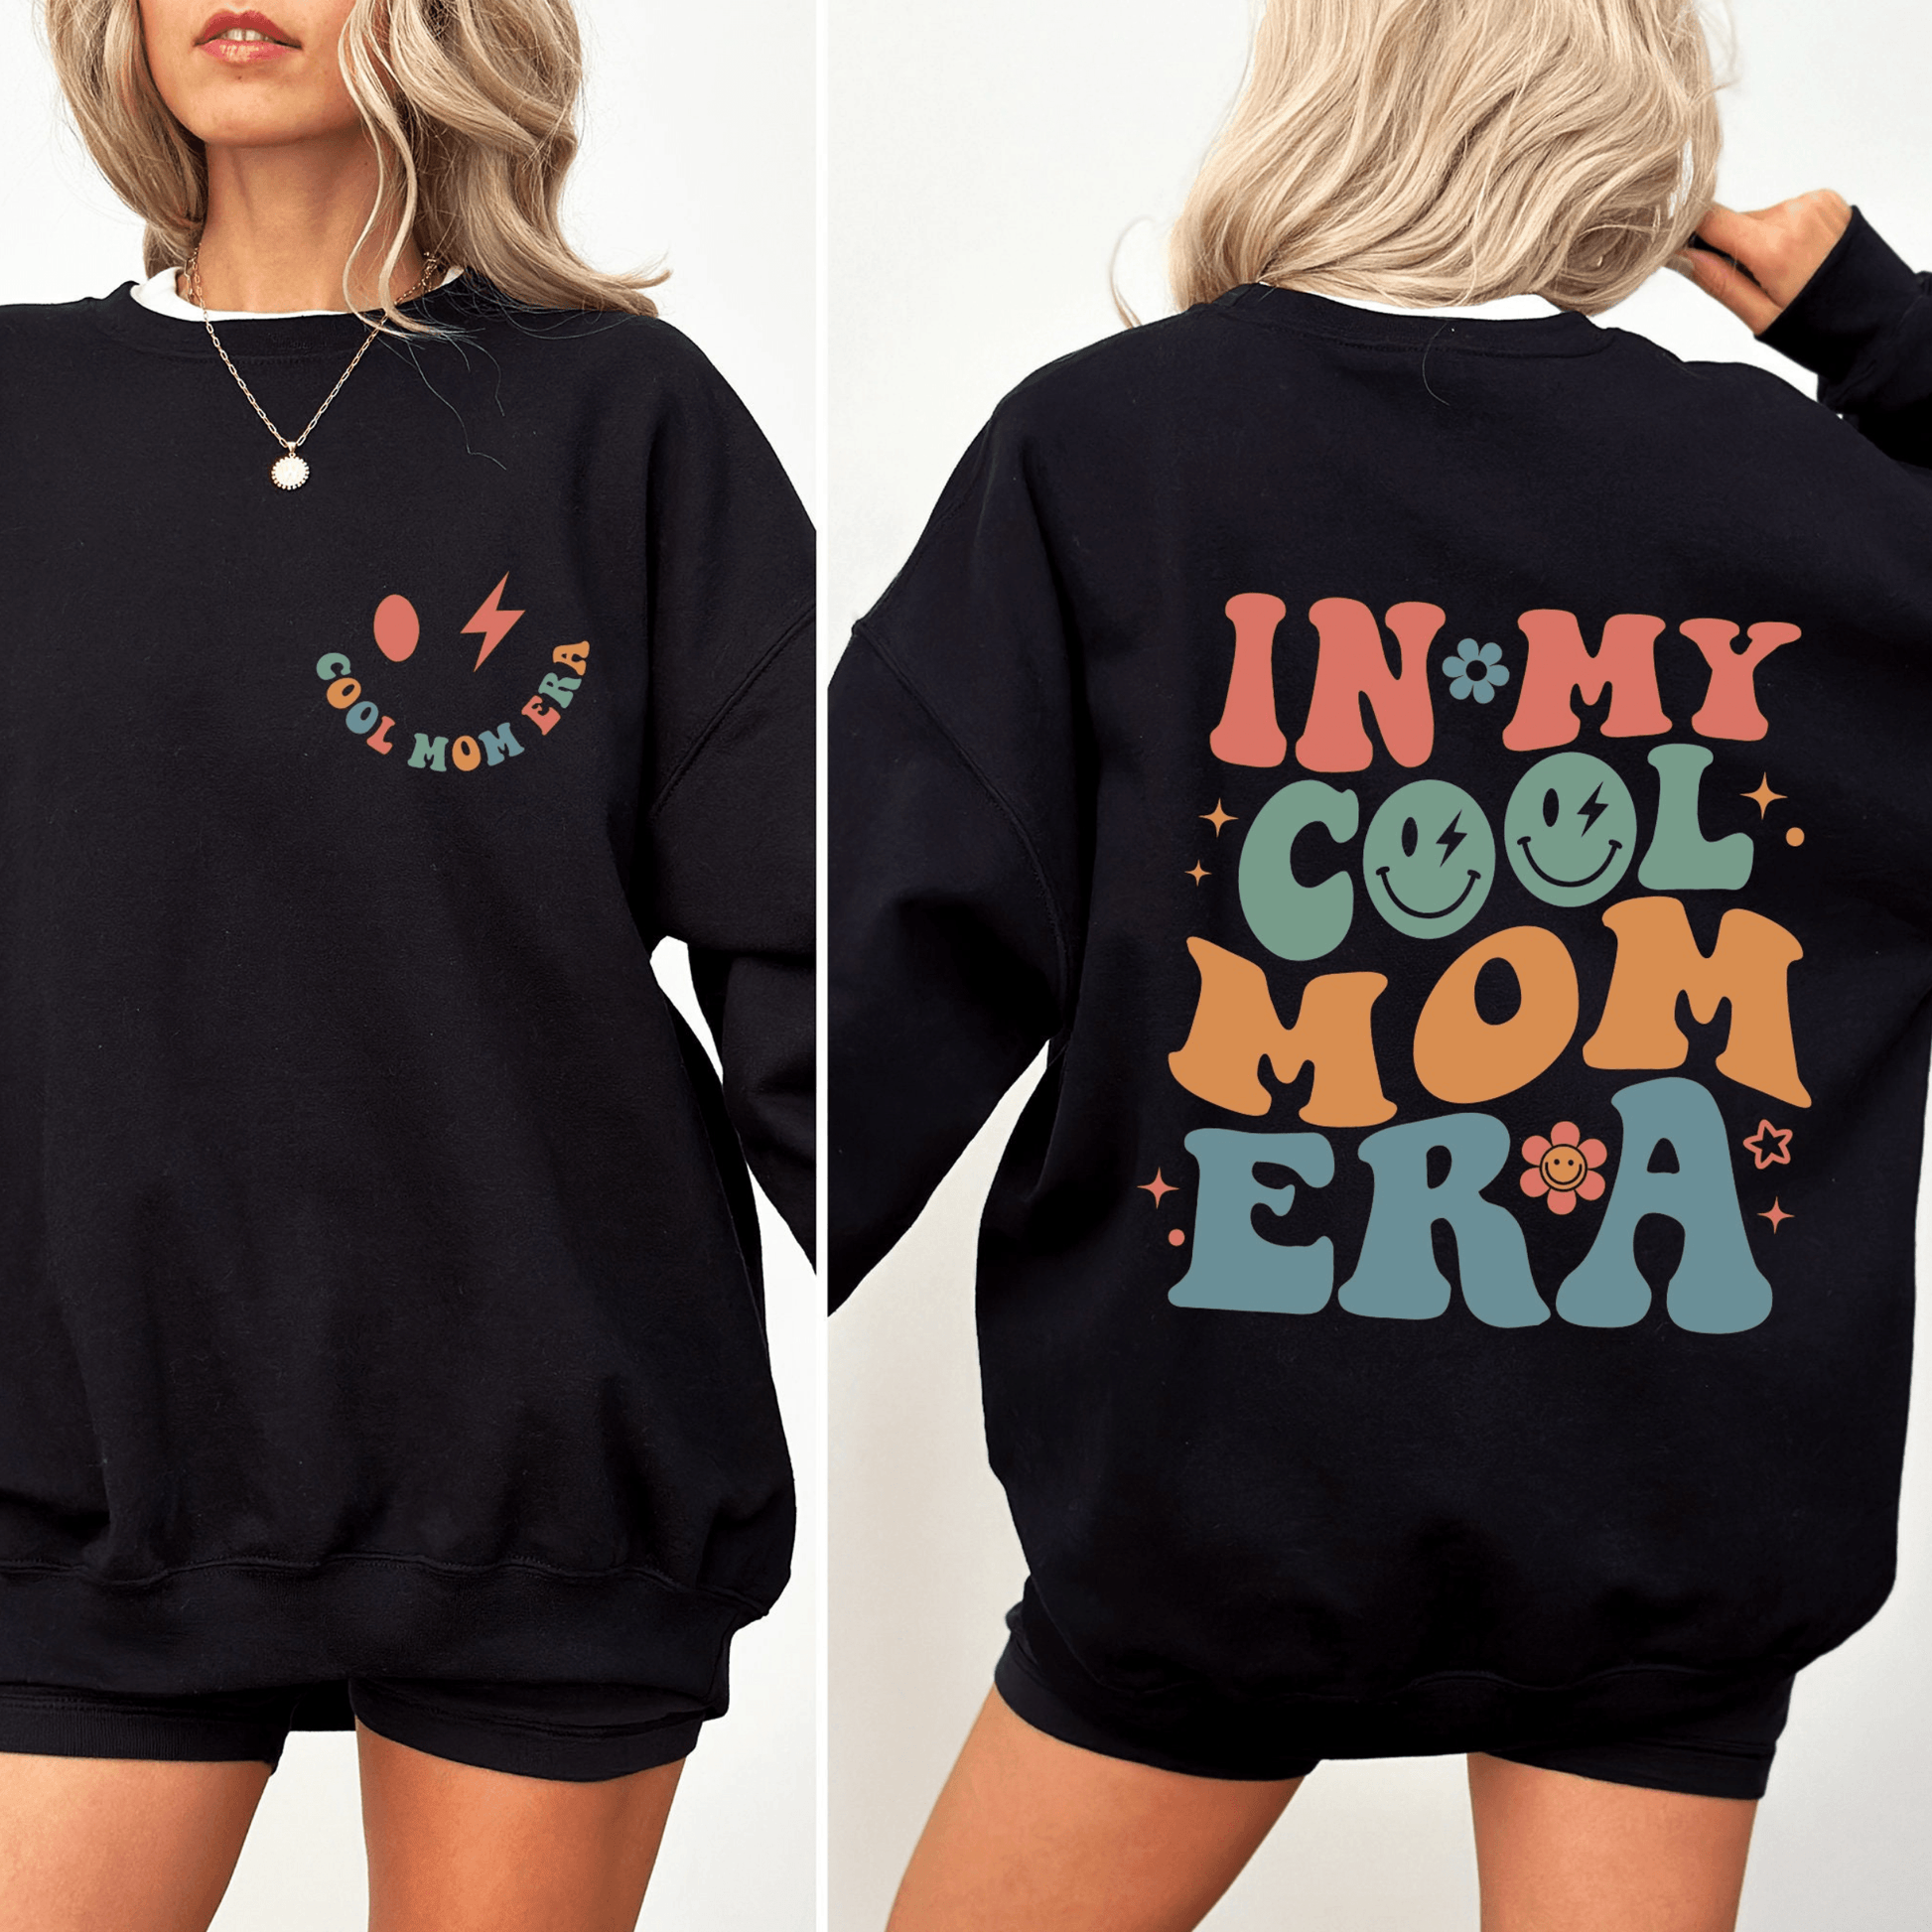 Cool-Mom-Zeitalter Sweatshirt - Personalisierbar für die moderne Mutter - Ideal für den Alltag und besondere Anlässe - GiftHaus